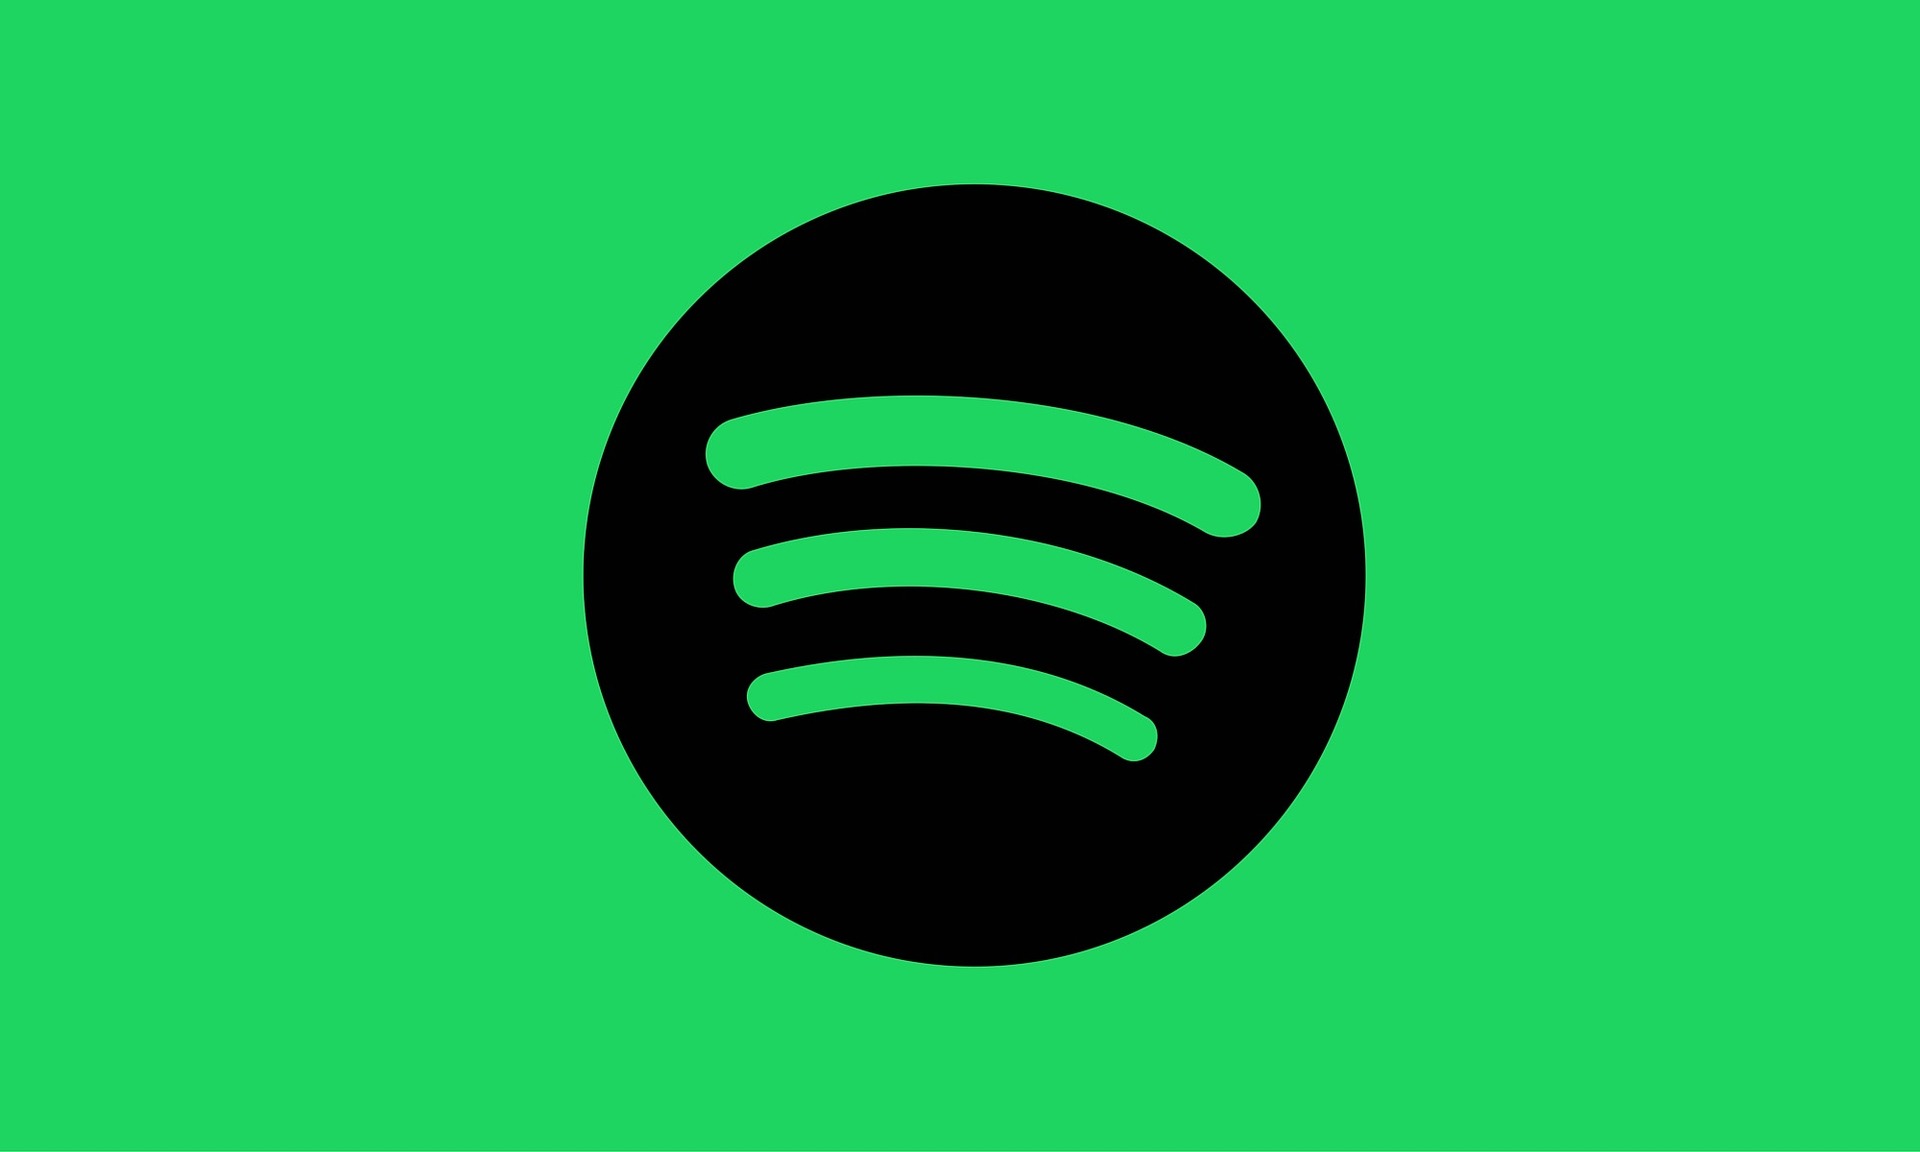  Spotify rachète le parisien Niland pour améliorer ses services